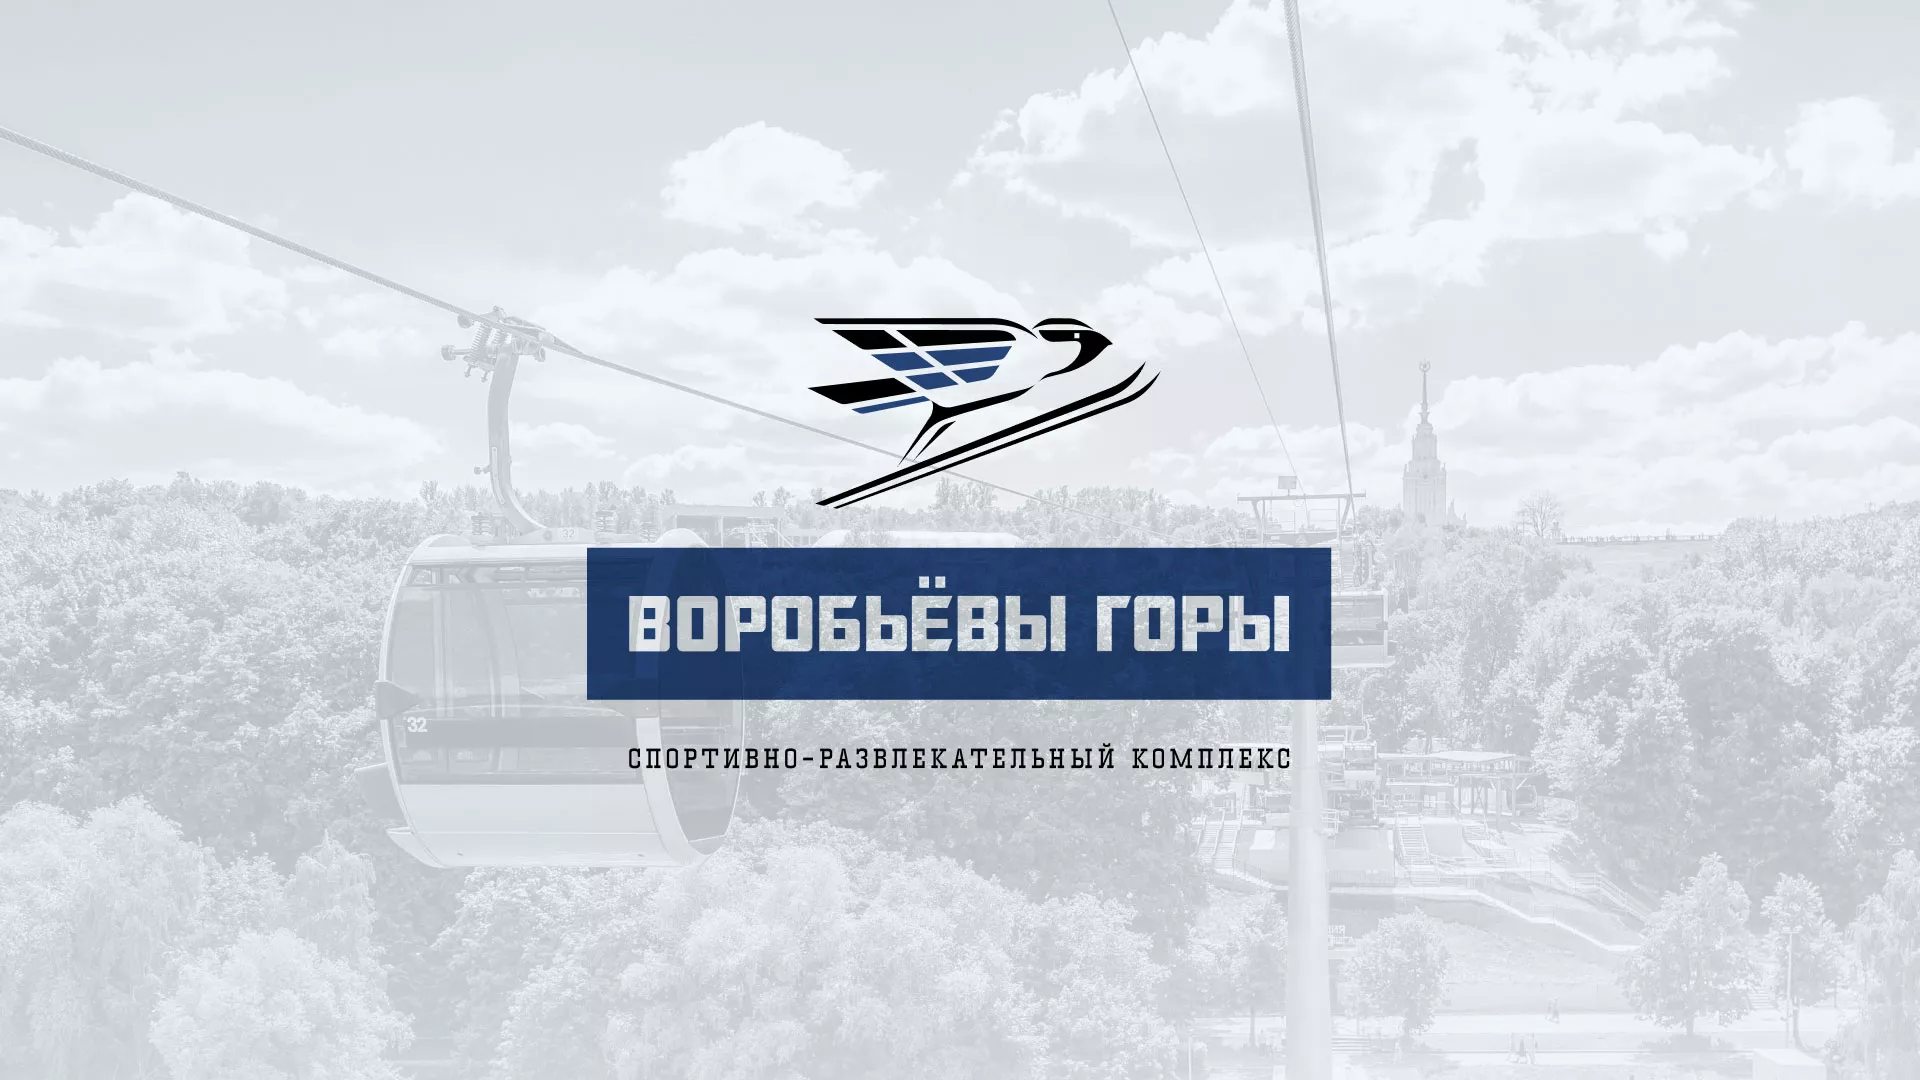 Разработка сайта в Болохово для спортивно-развлекательного комплекса «Воробьёвы горы»